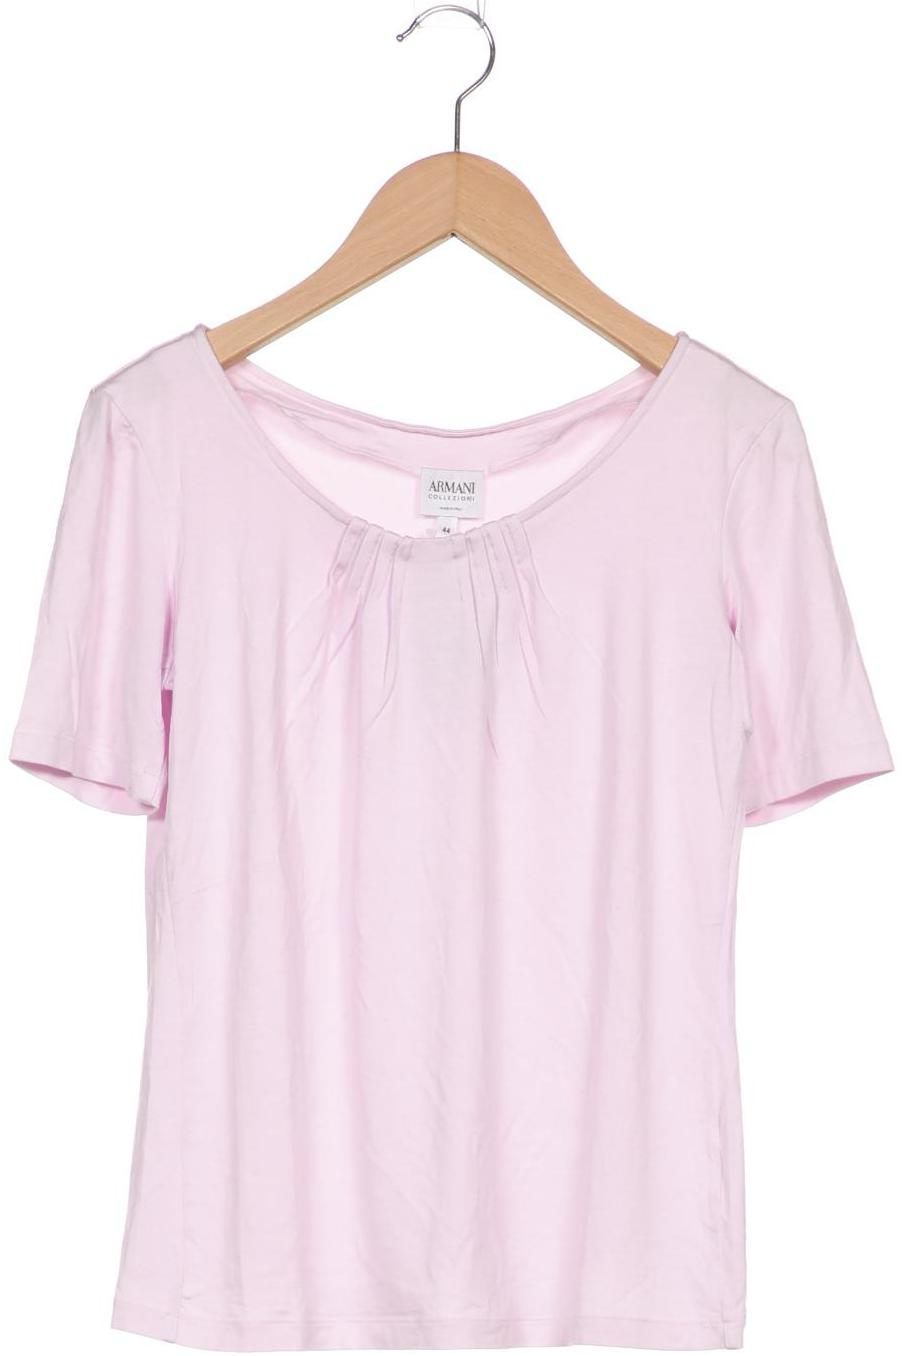 Armani Collezioni Damen T-Shirt, pink von Armani Collezioni